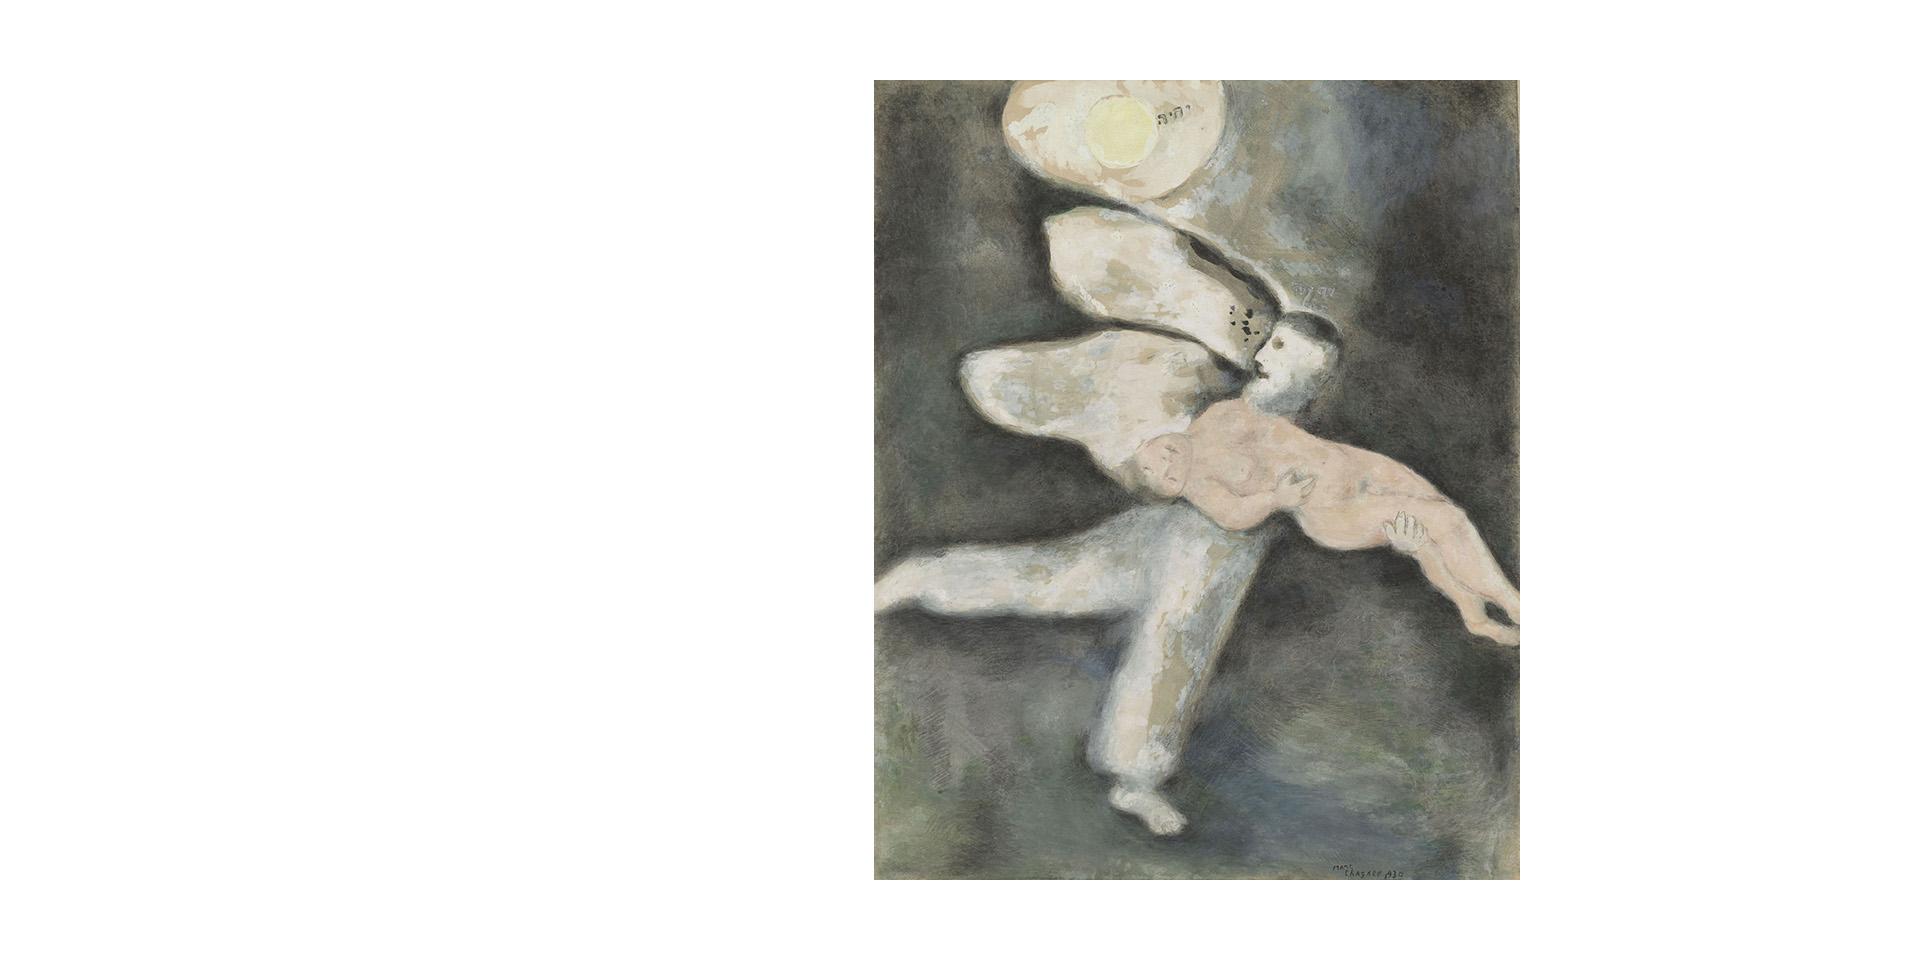 Marc Chagall, "Dieu crée l'homme", 1930. Dessin, gouache préparatoire pour les gravures de la Bible, 64 x 48 cm. Nice, musée national Marc Chagall, donation Marc et Valentina Chagall (1972). © Photo : Rmn-GP / Adrien Didierjean © ADAGP, Paris, 2022